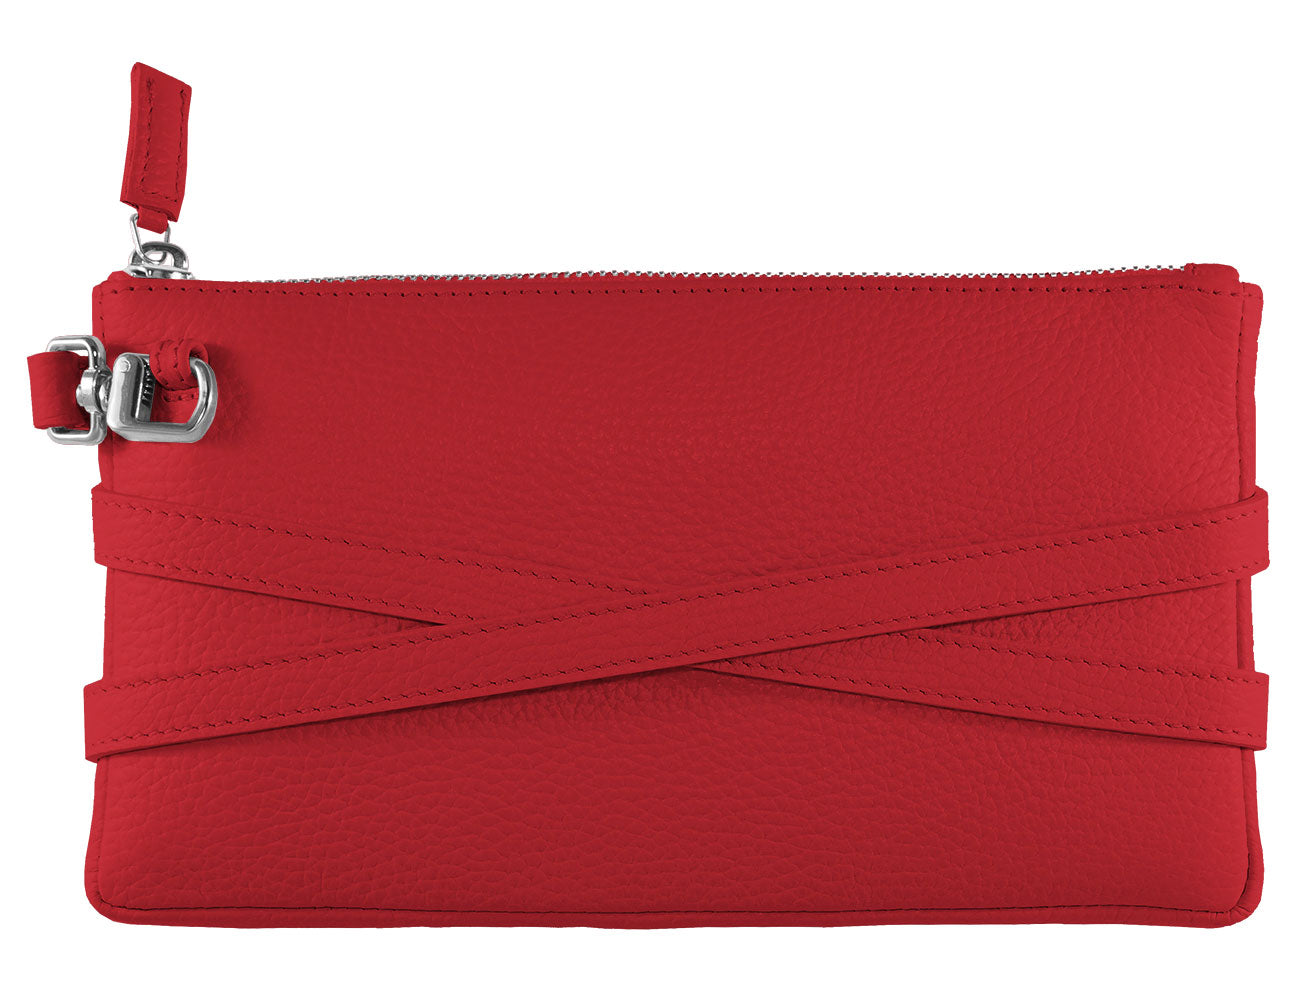 minibag red, Ledertasche rot, Clutch rot, Geldbörse rot, Geldbörse zum Umhängen, Rückseite minibag